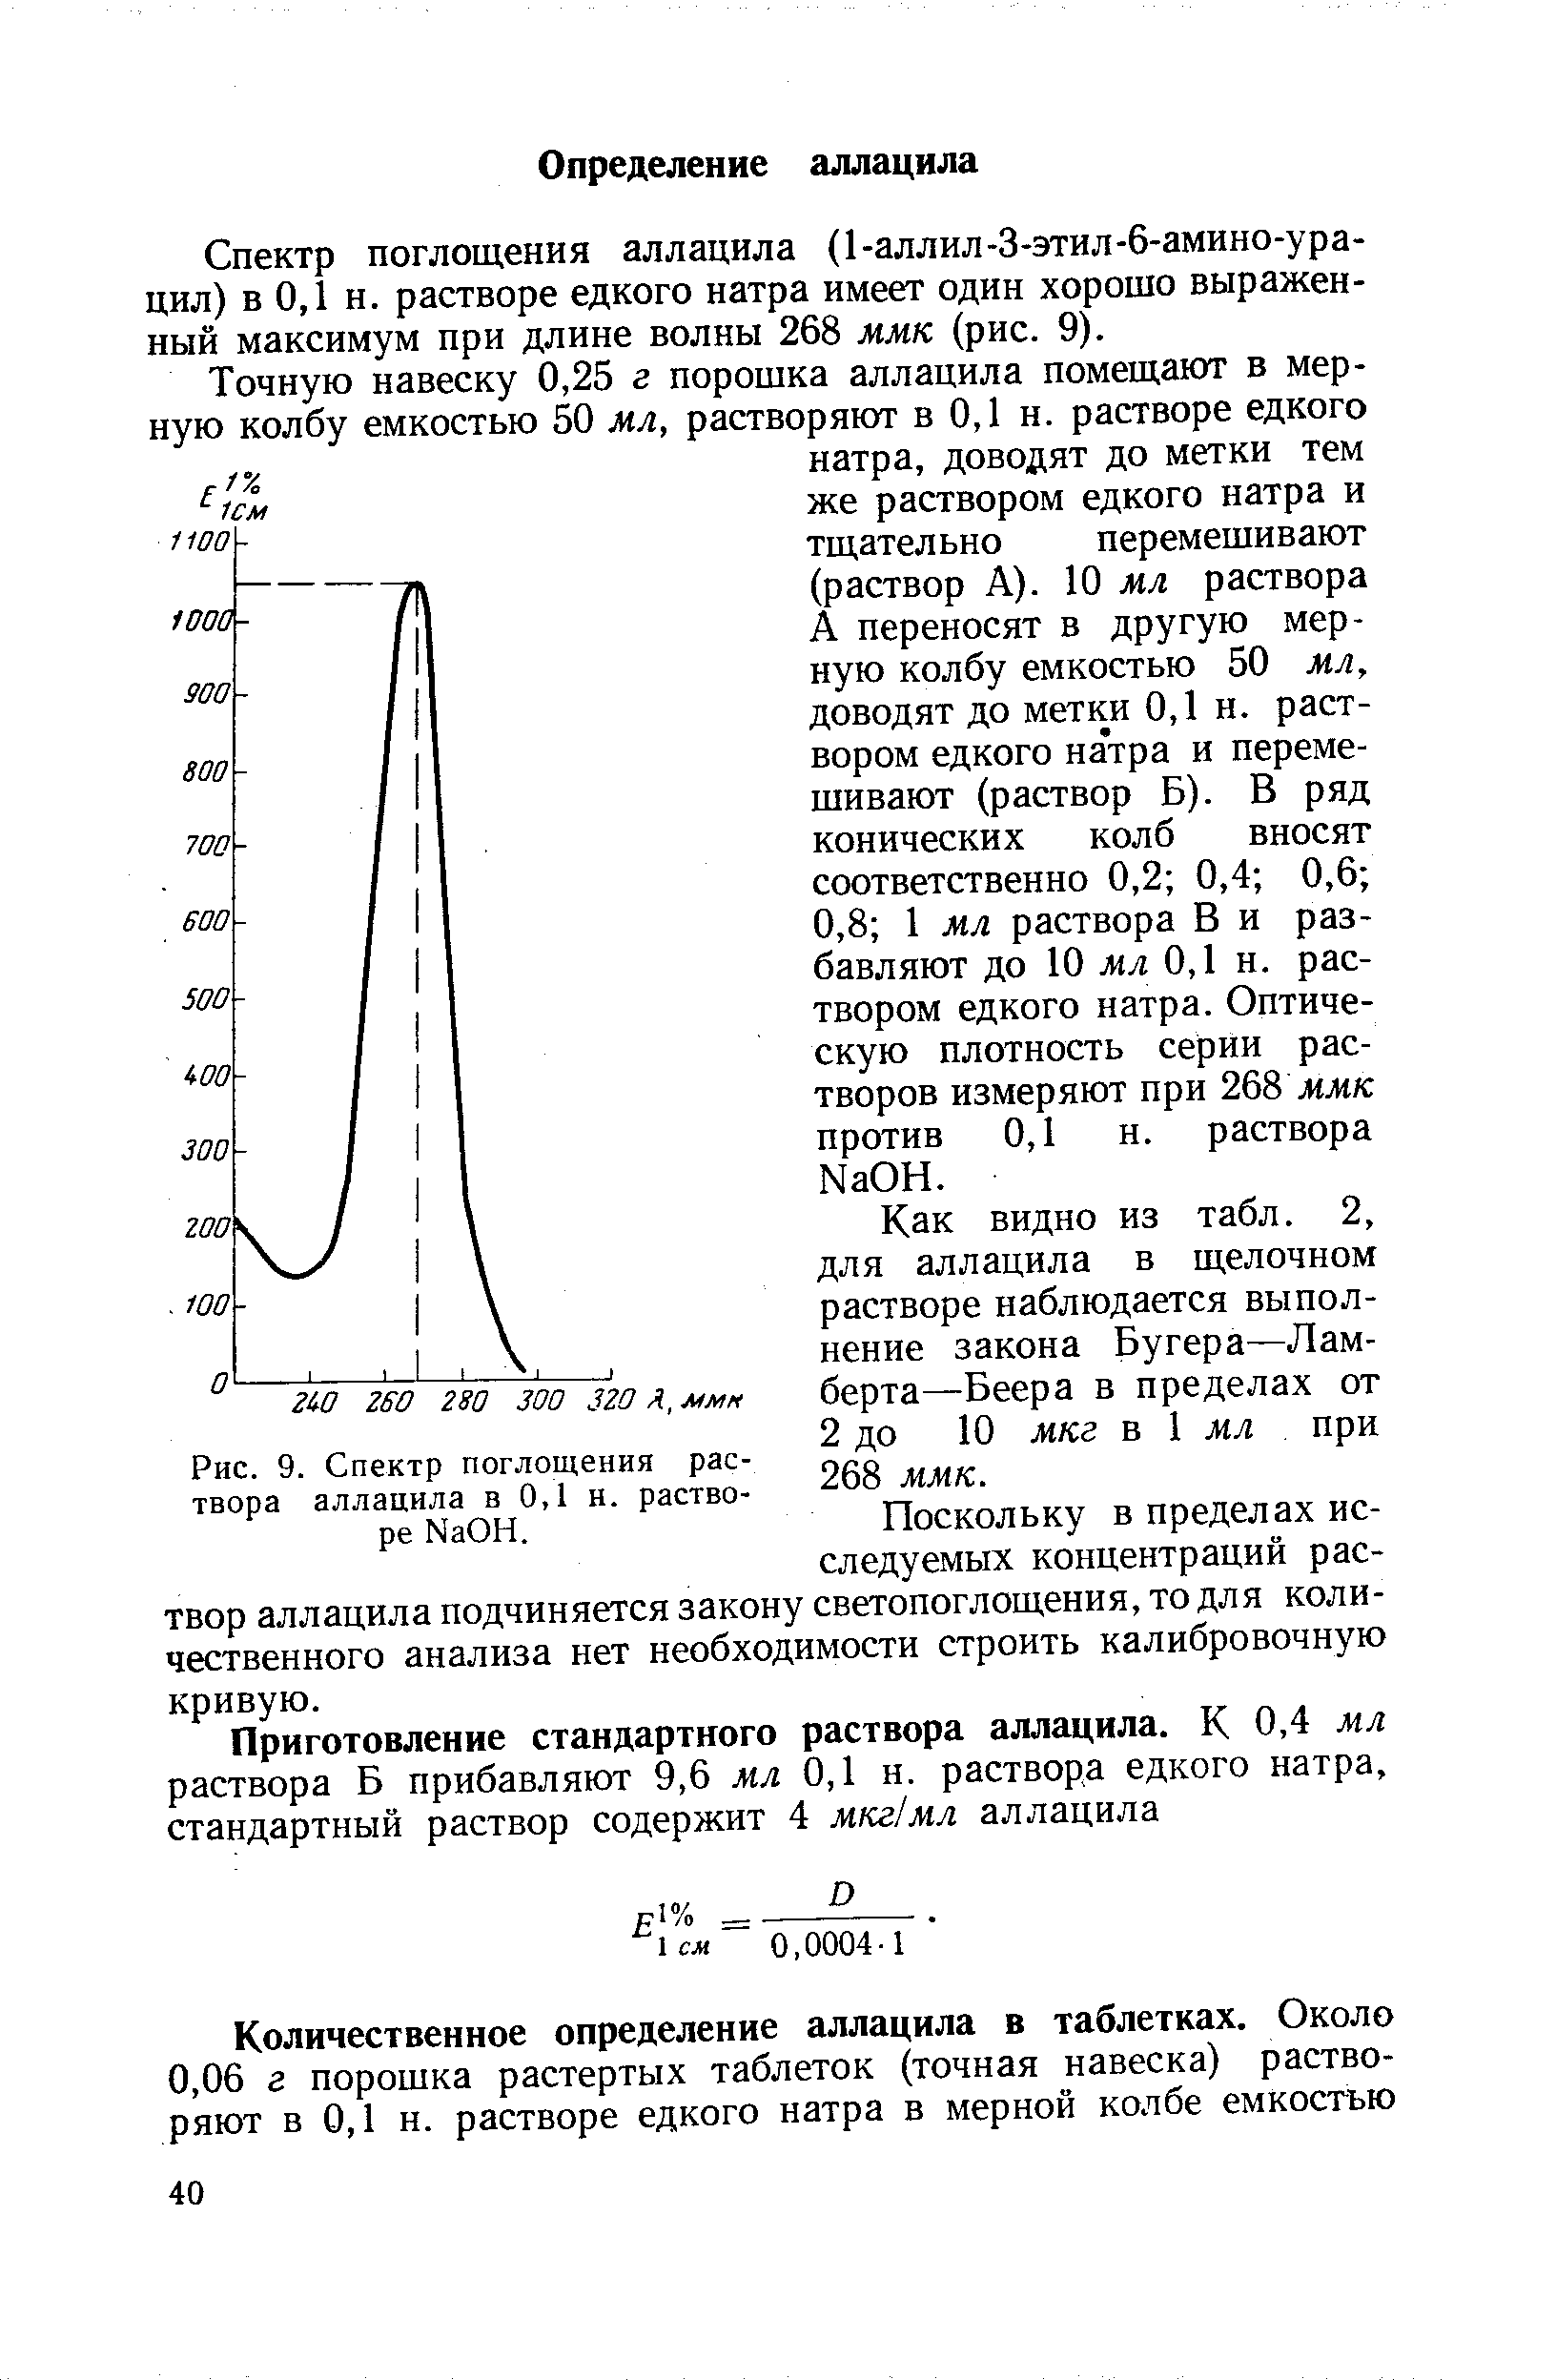 Рис. 9. Спектр поглощения раствора аллацила в 0,1 и. растворе N8011.